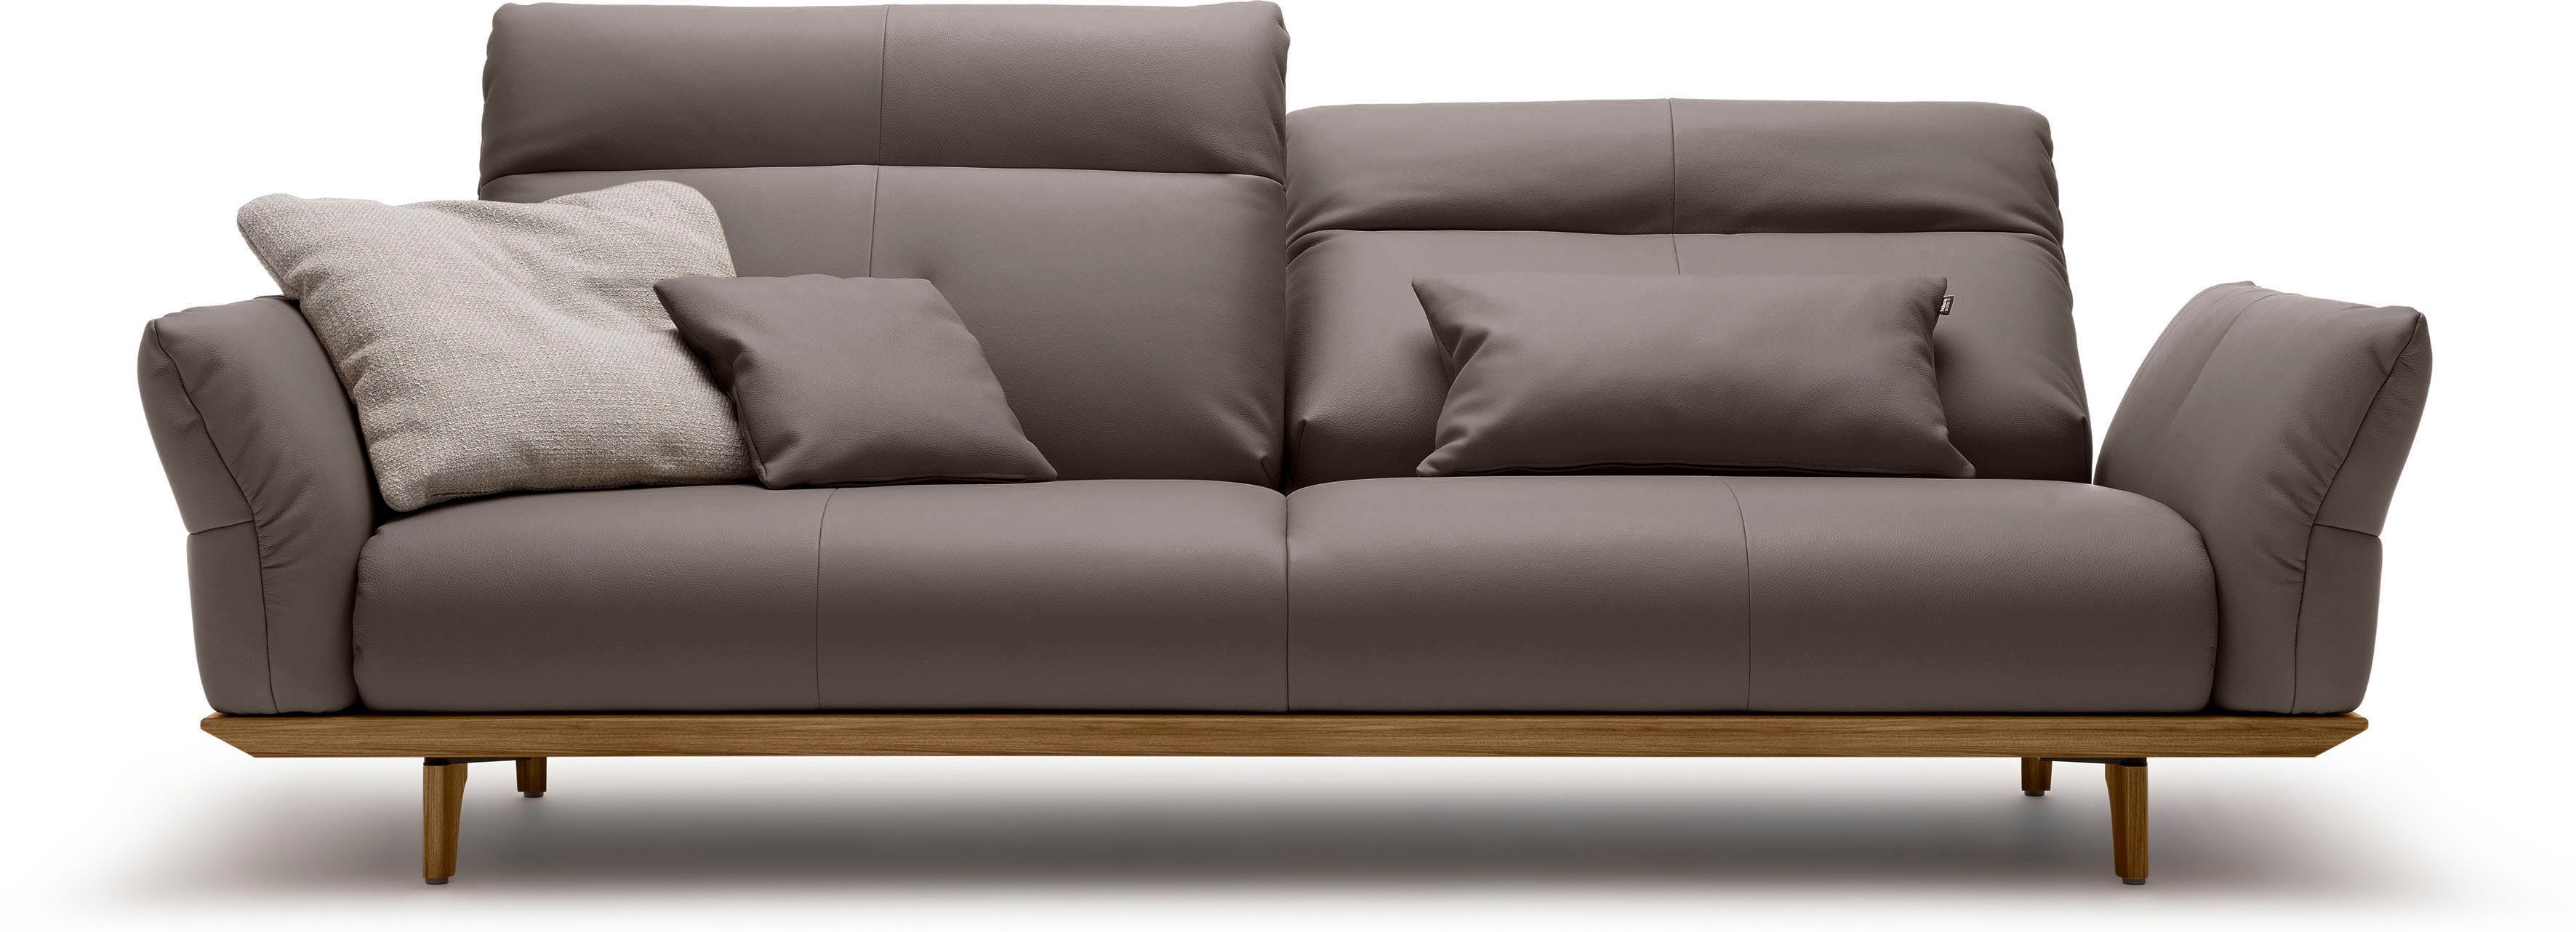 sofa und 3,5-Sitzer in Breite hs.460, Nussbaum, Füße Sockel hülsta cm 228